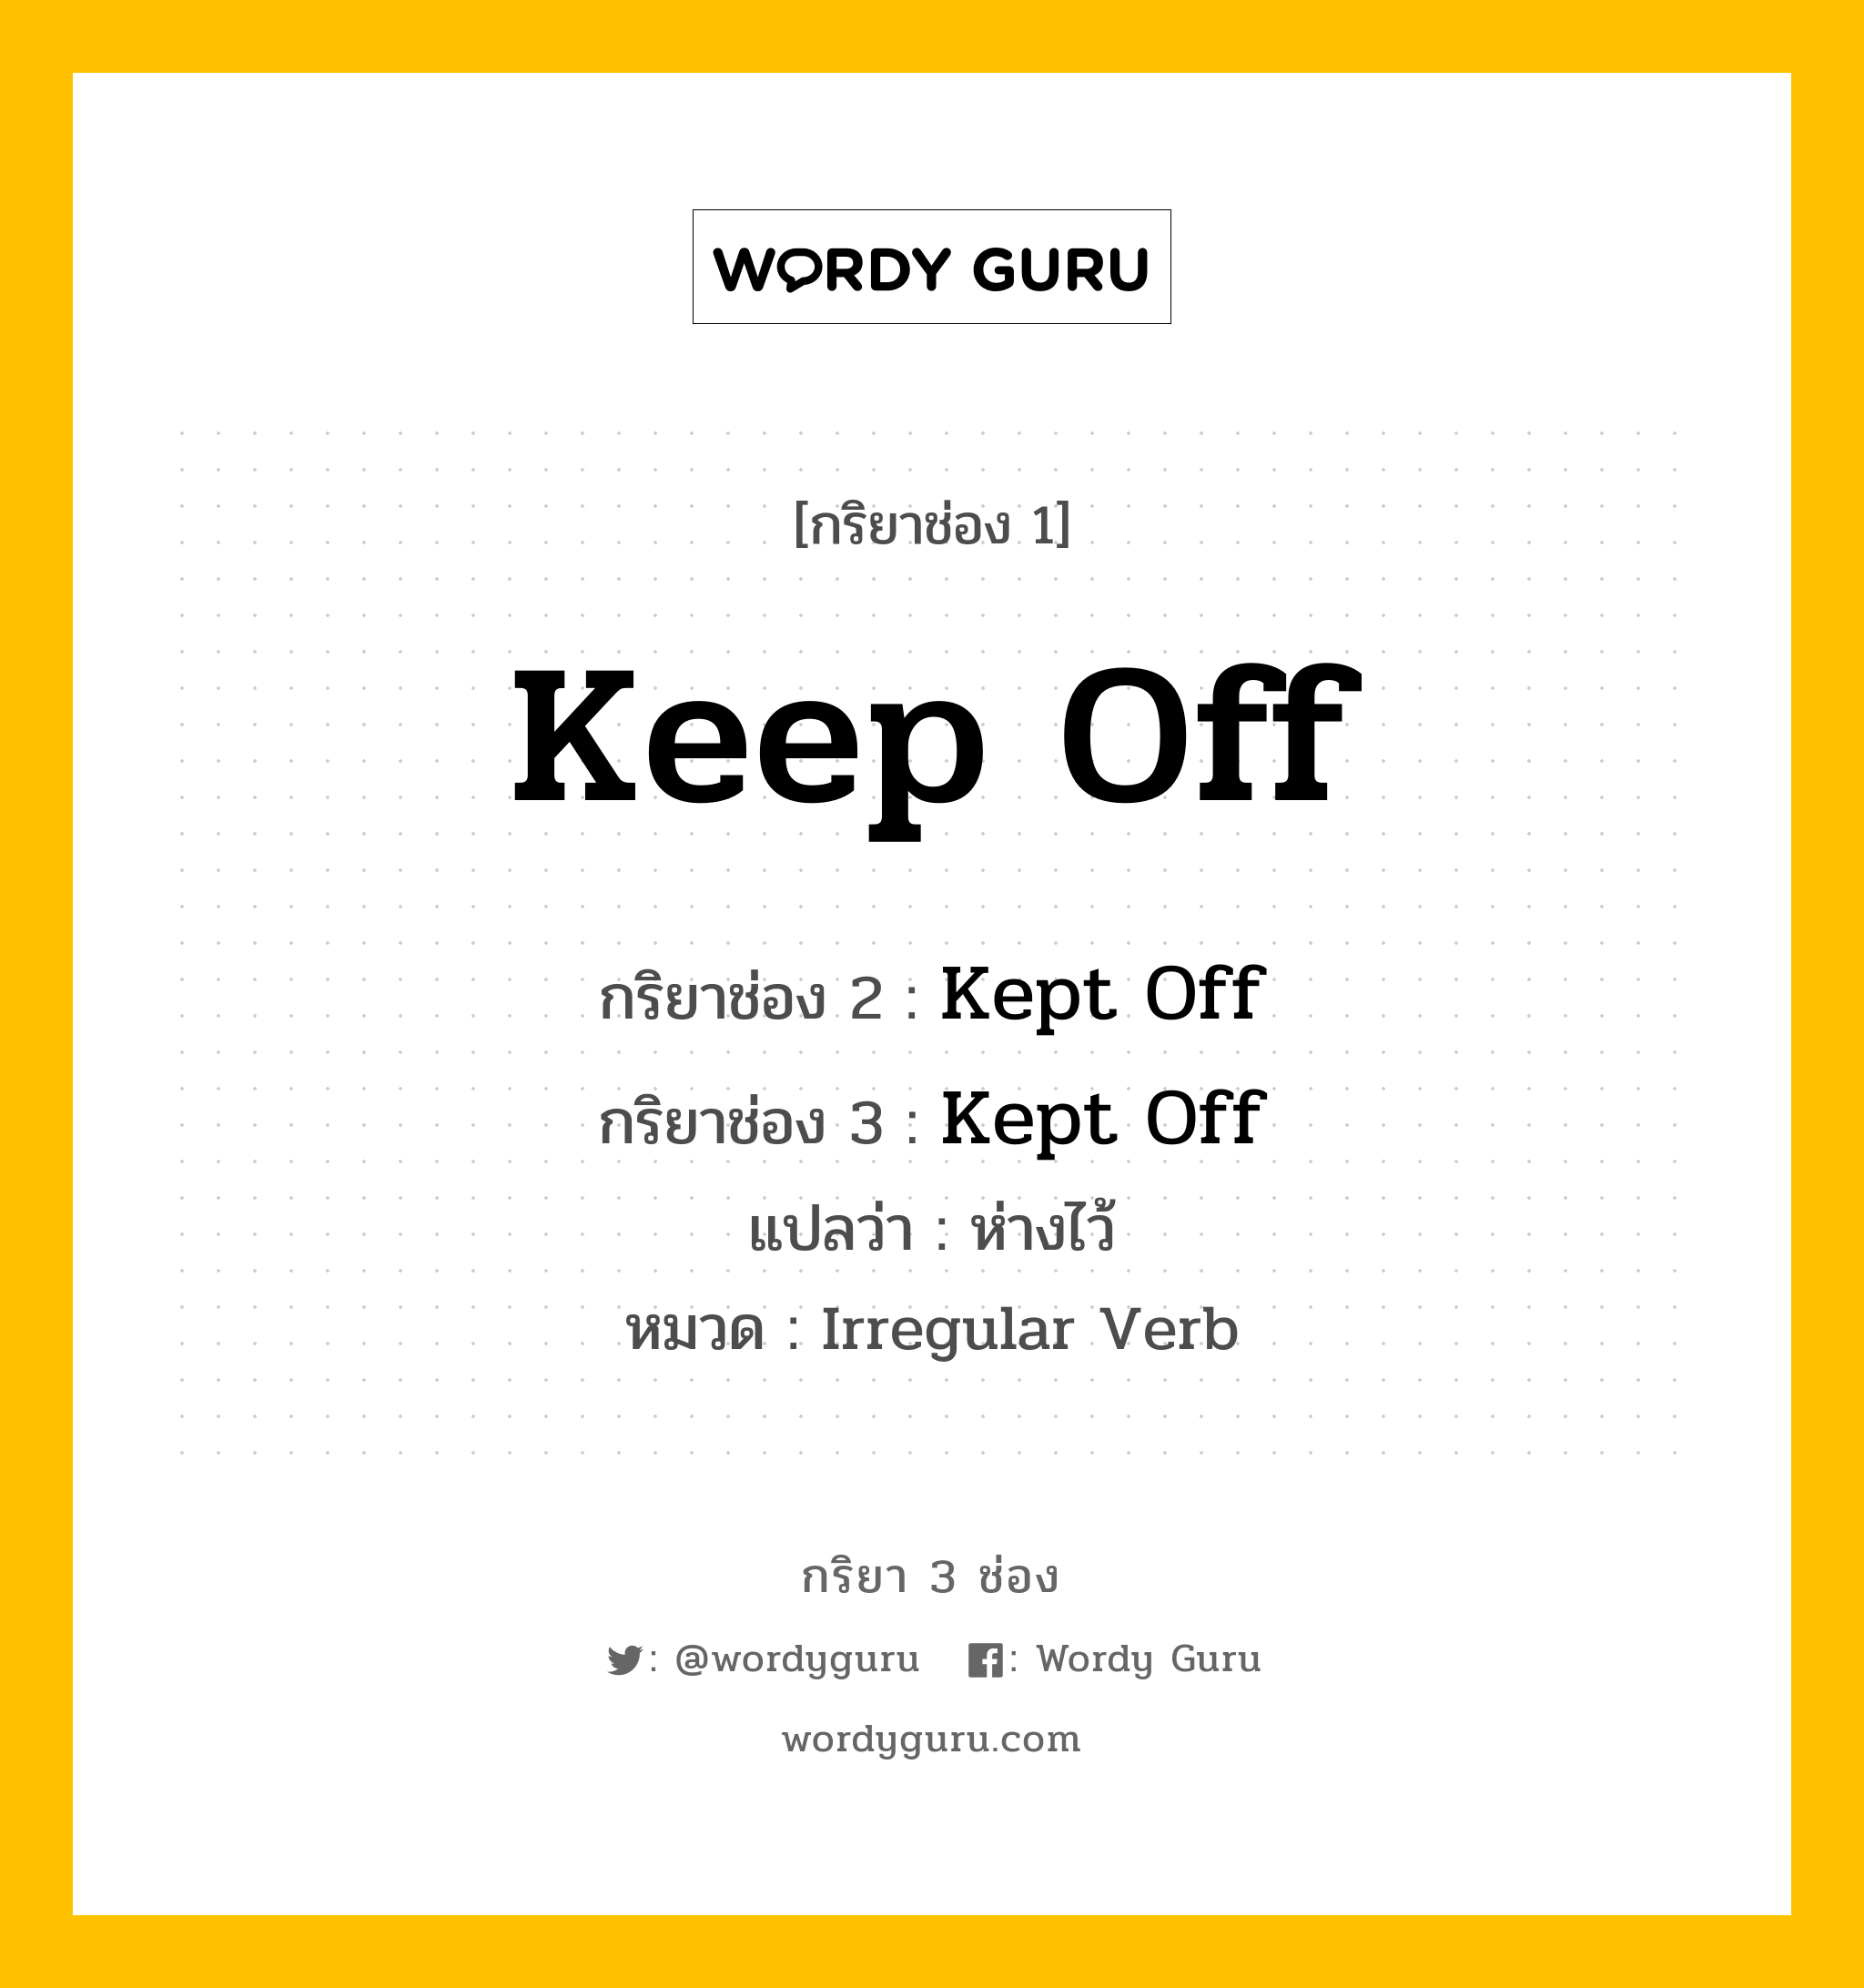 กริยา 3 ช่อง: Keep Off ช่อง 2 Keep Off ช่อง 3 คืออะไร, กริยาช่อง 1 Keep Off กริยาช่อง 2 Kept Off กริยาช่อง 3 Kept Off แปลว่า ห่างไว้ หมวด Irregular Verb หมวด Irregular Verb